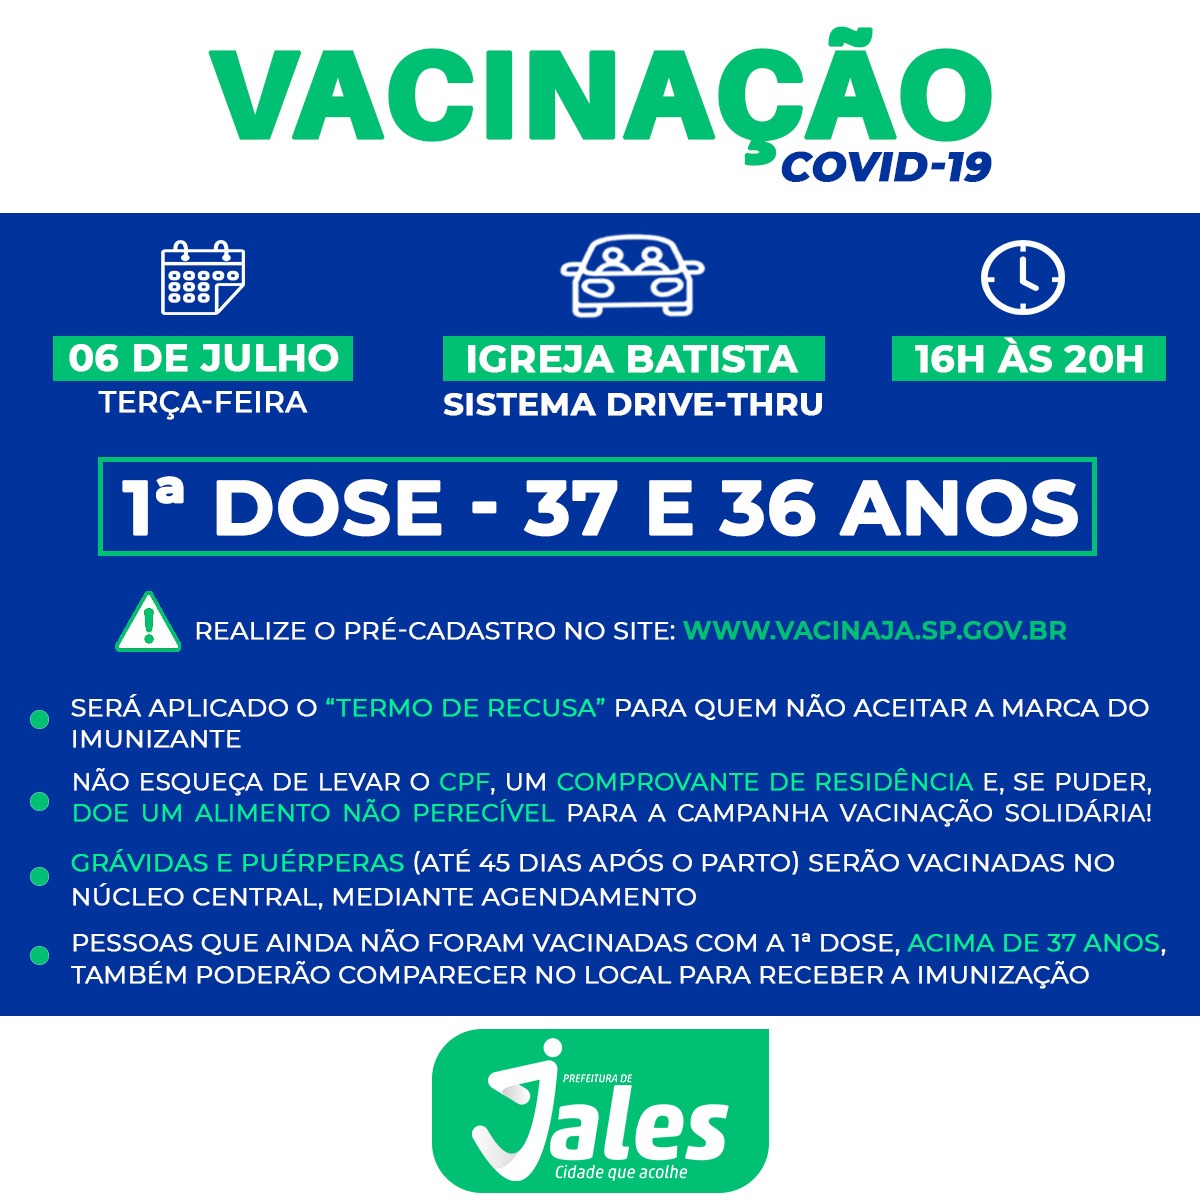 Jales vacinará contra a covid-19 dois novos públicos na terça-feira (06), pessoas de 37 e 36 anos